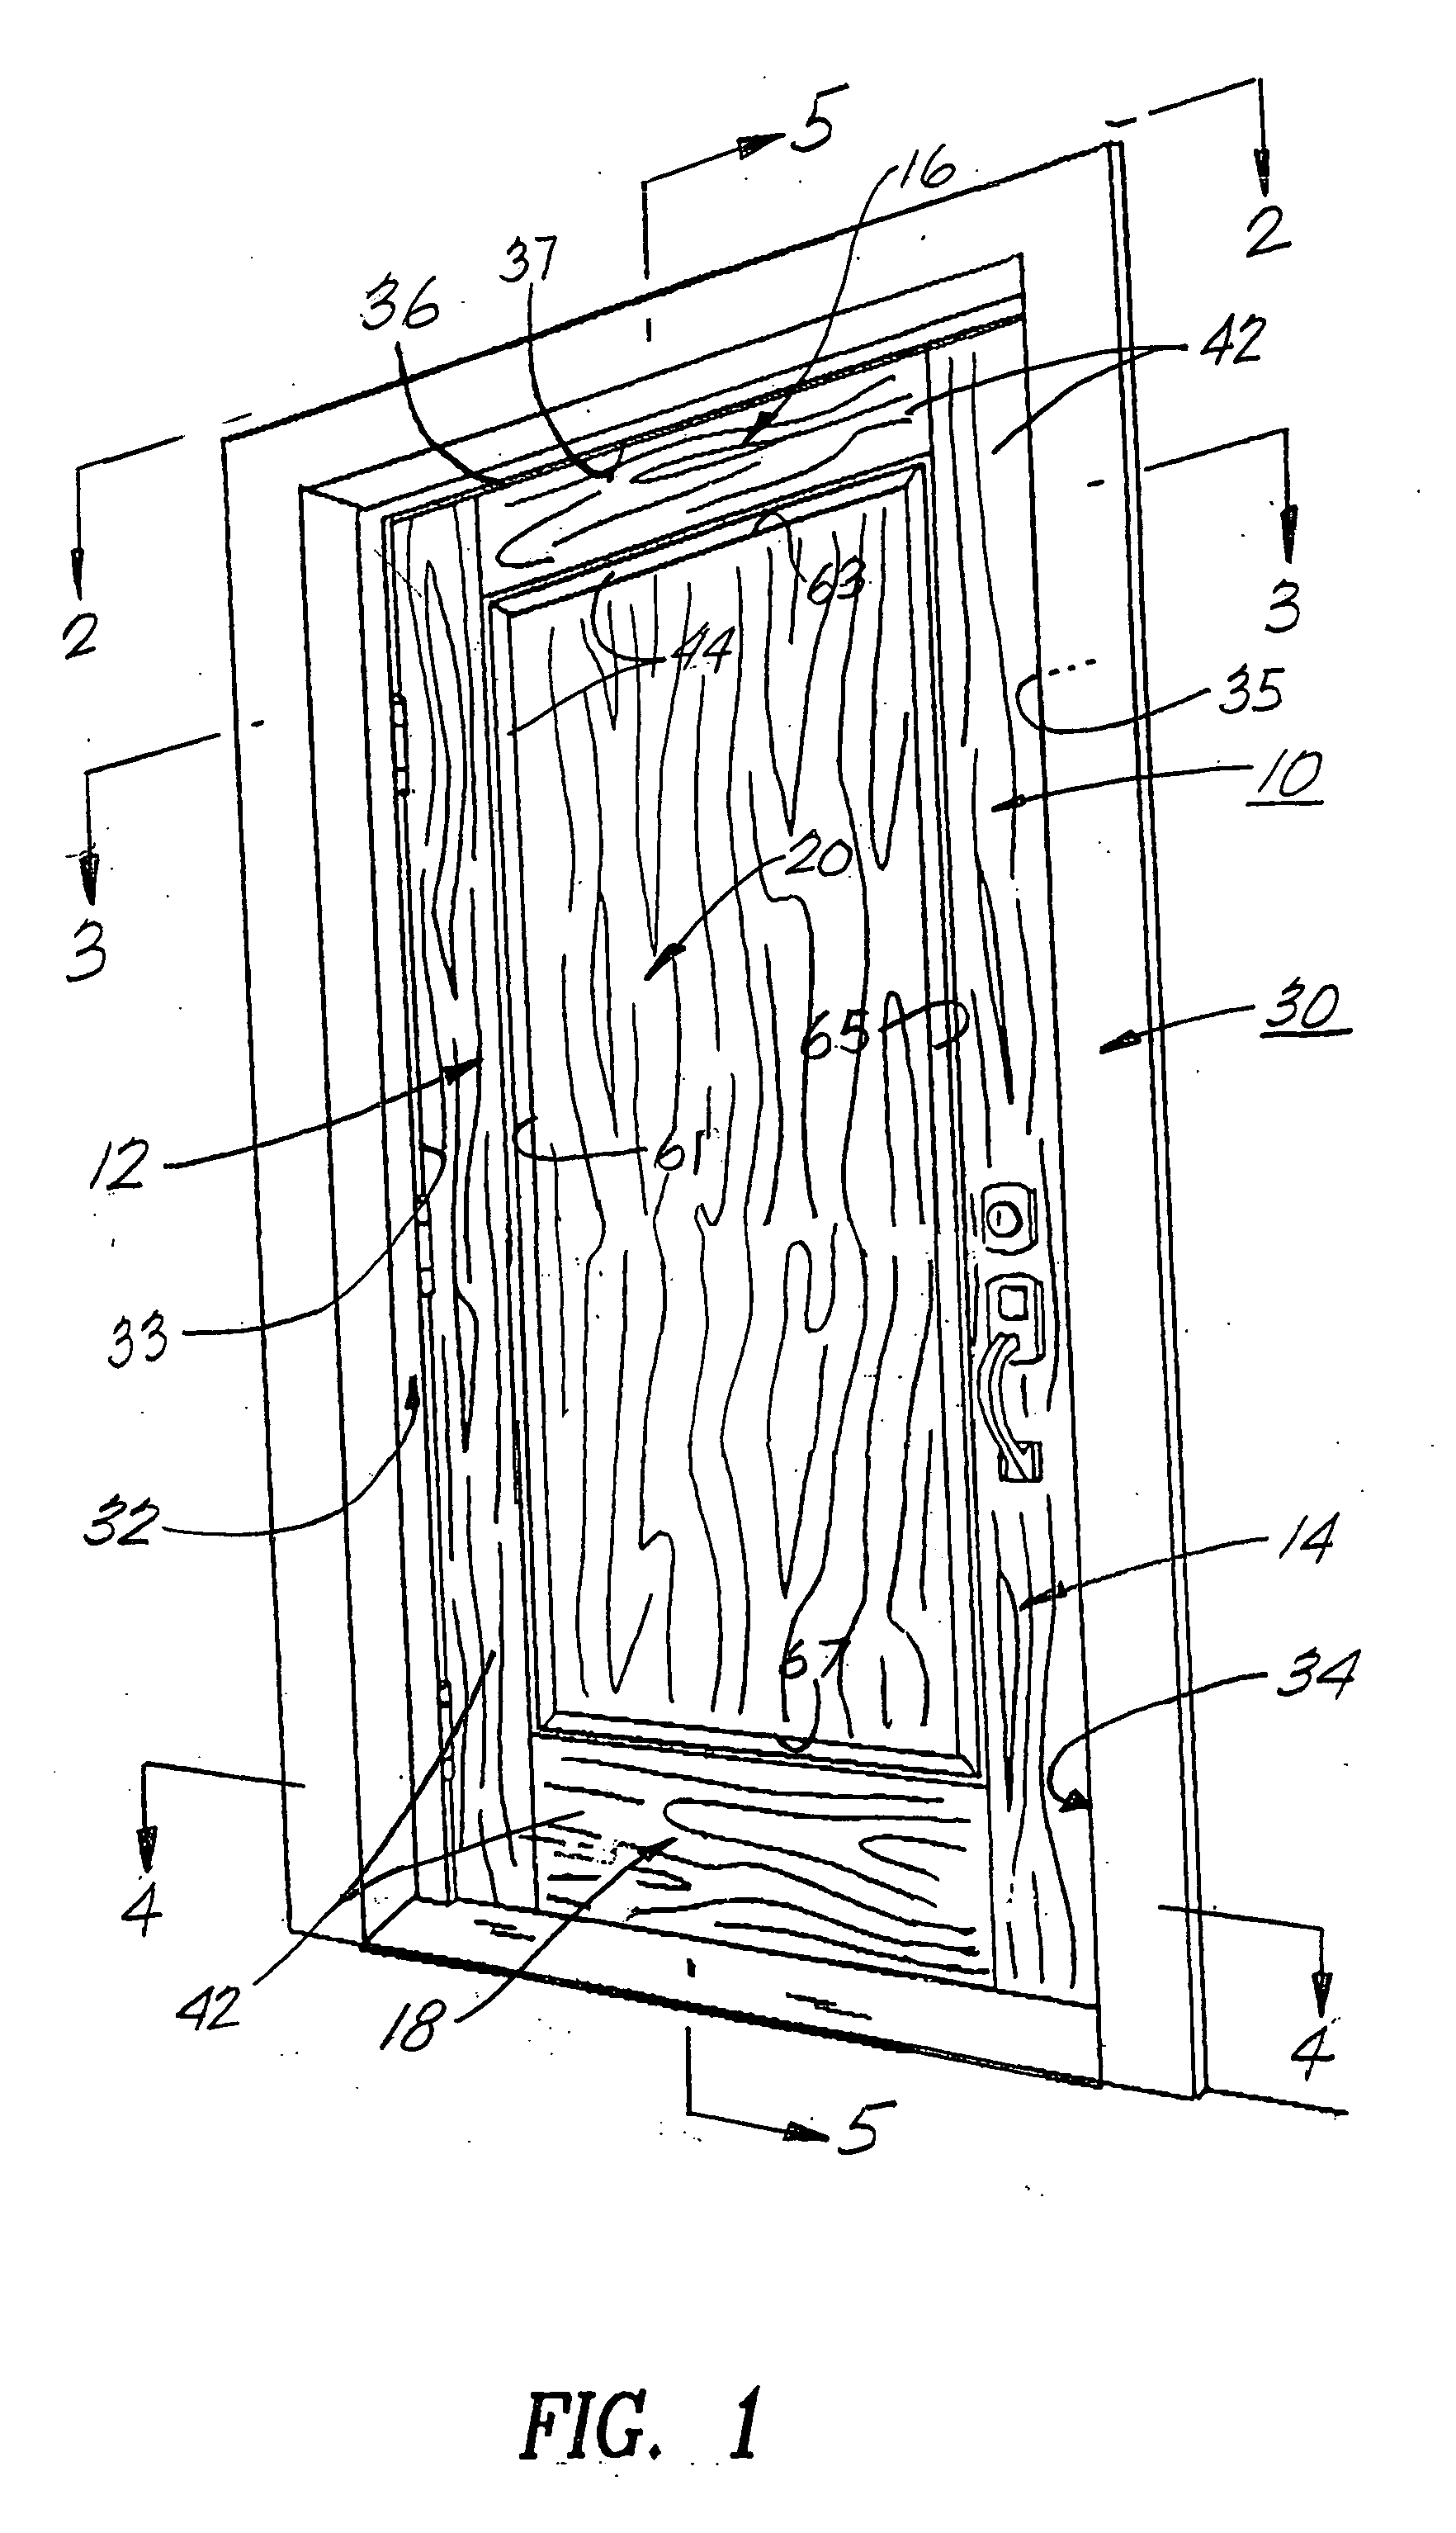 Fire retardant panel door and door frame having intumescent materials therein